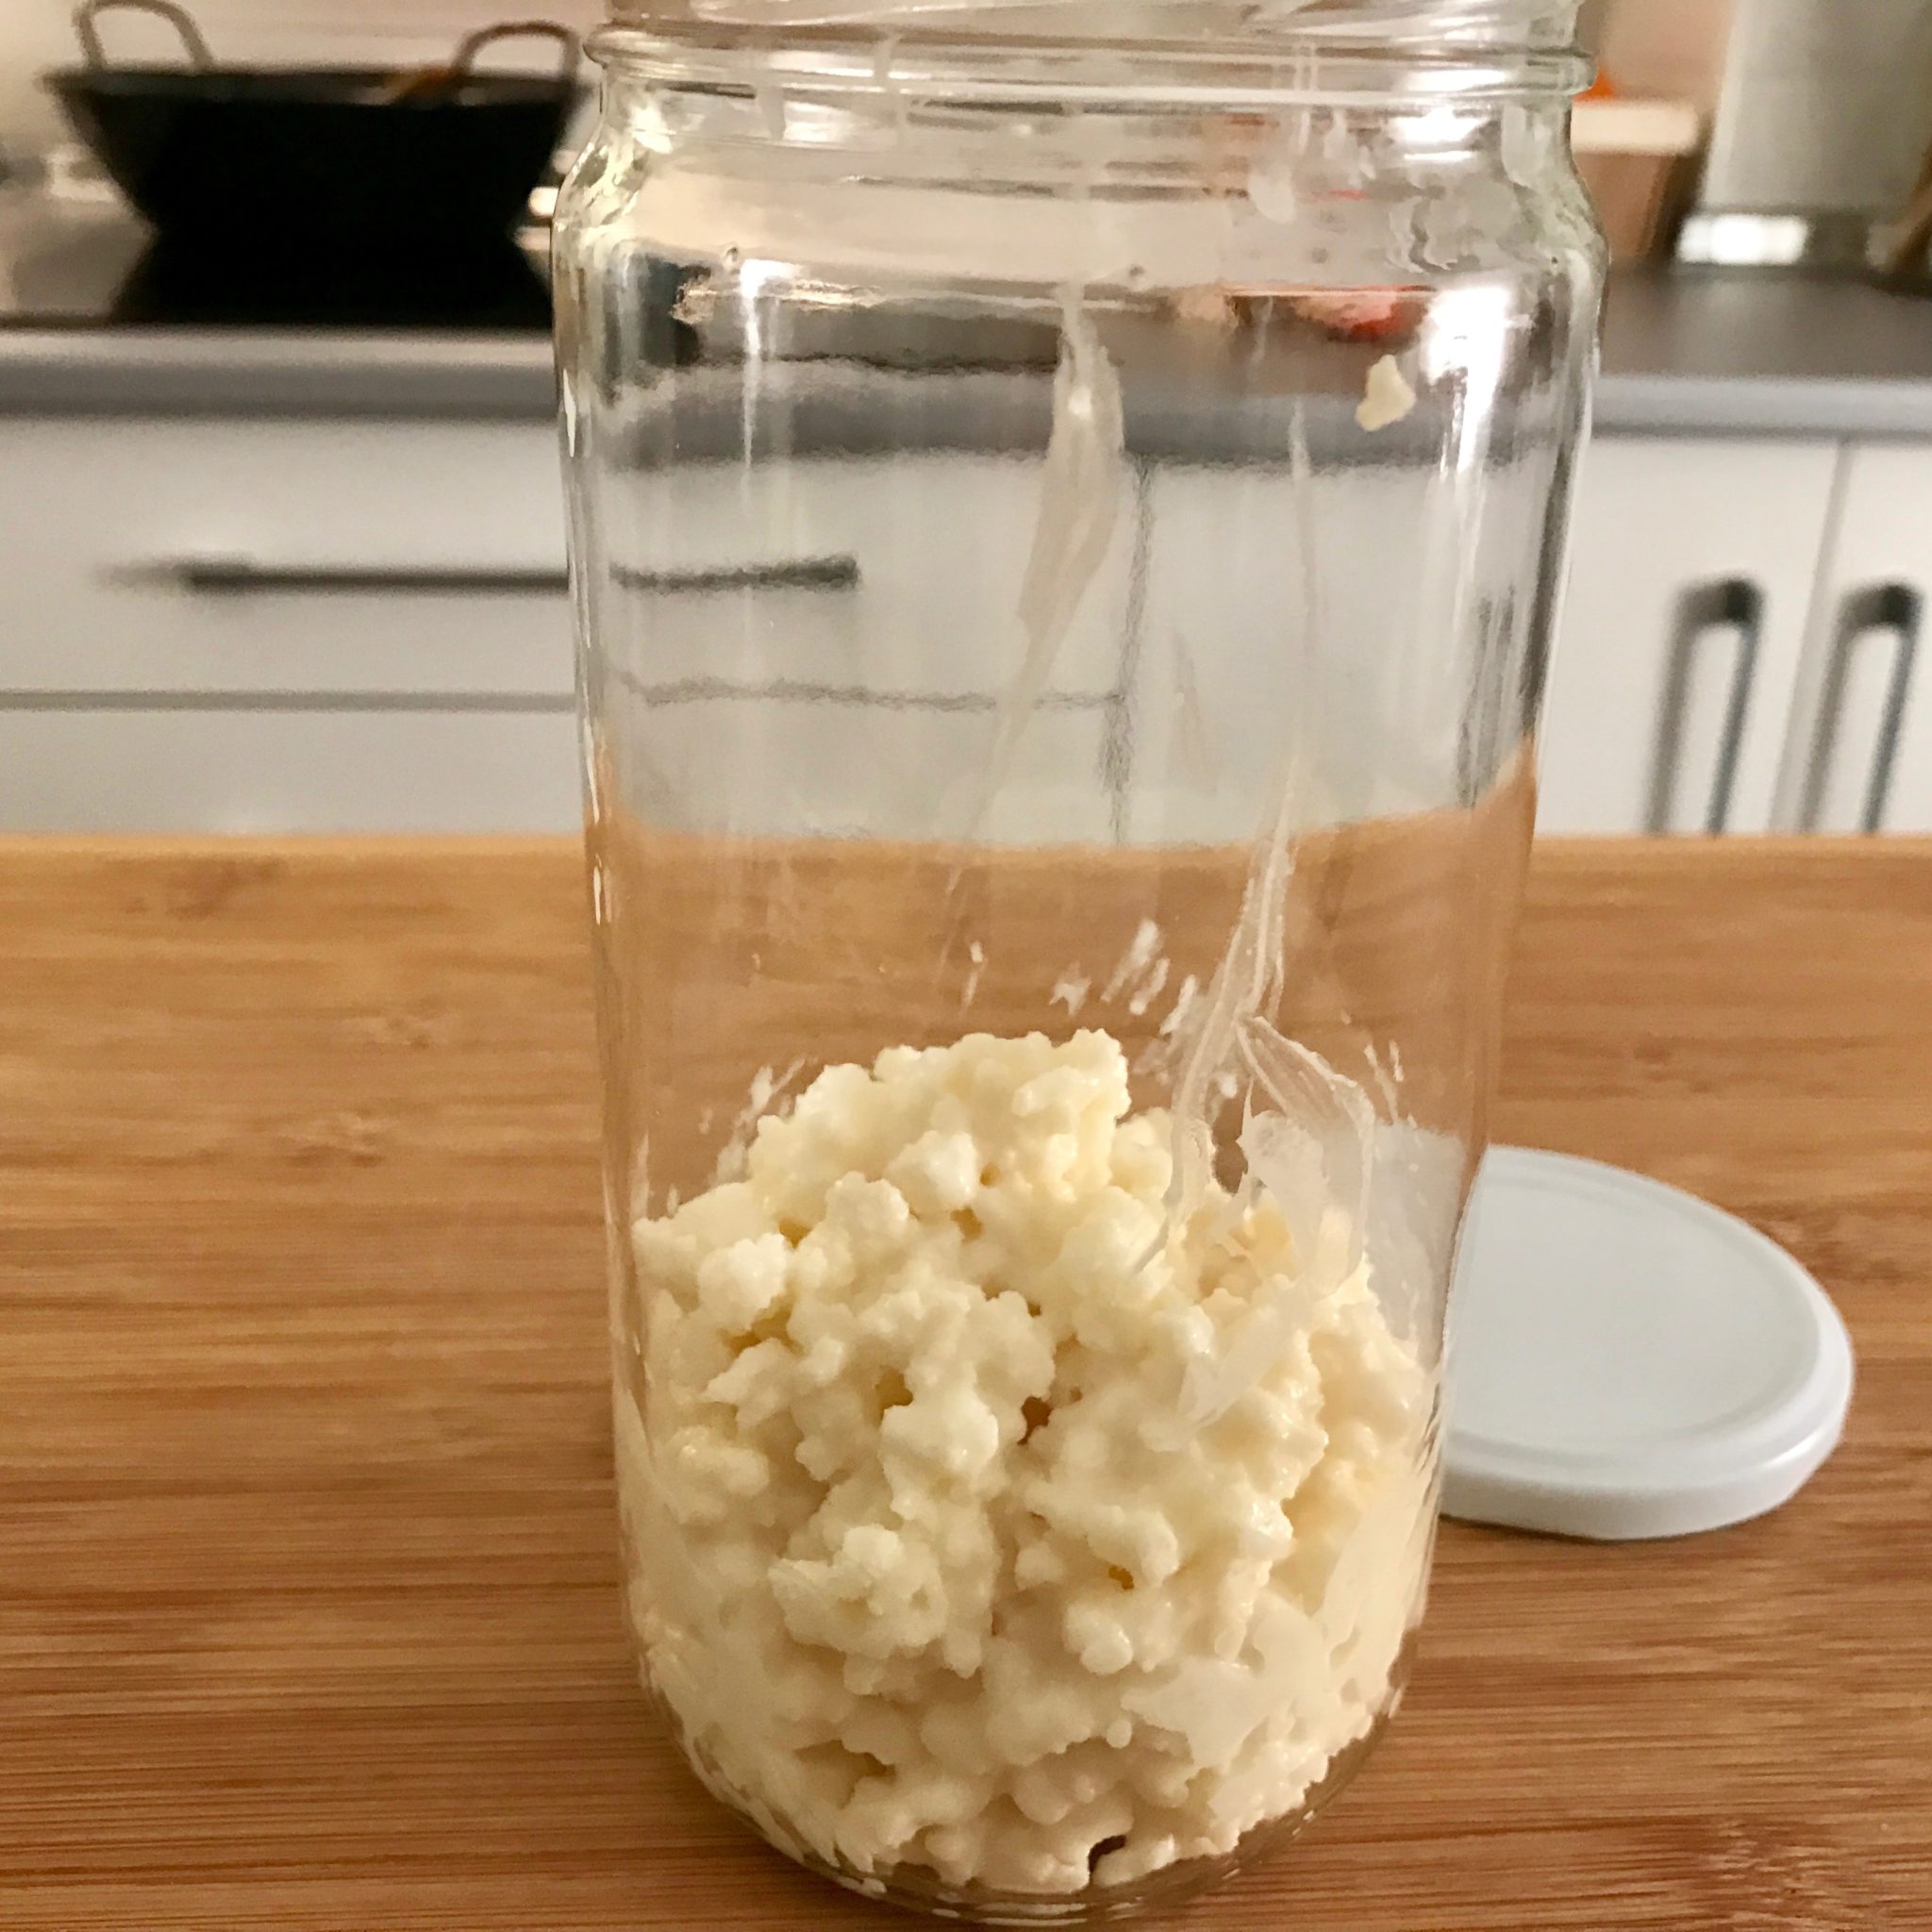 Healthy kefir grains in a jar